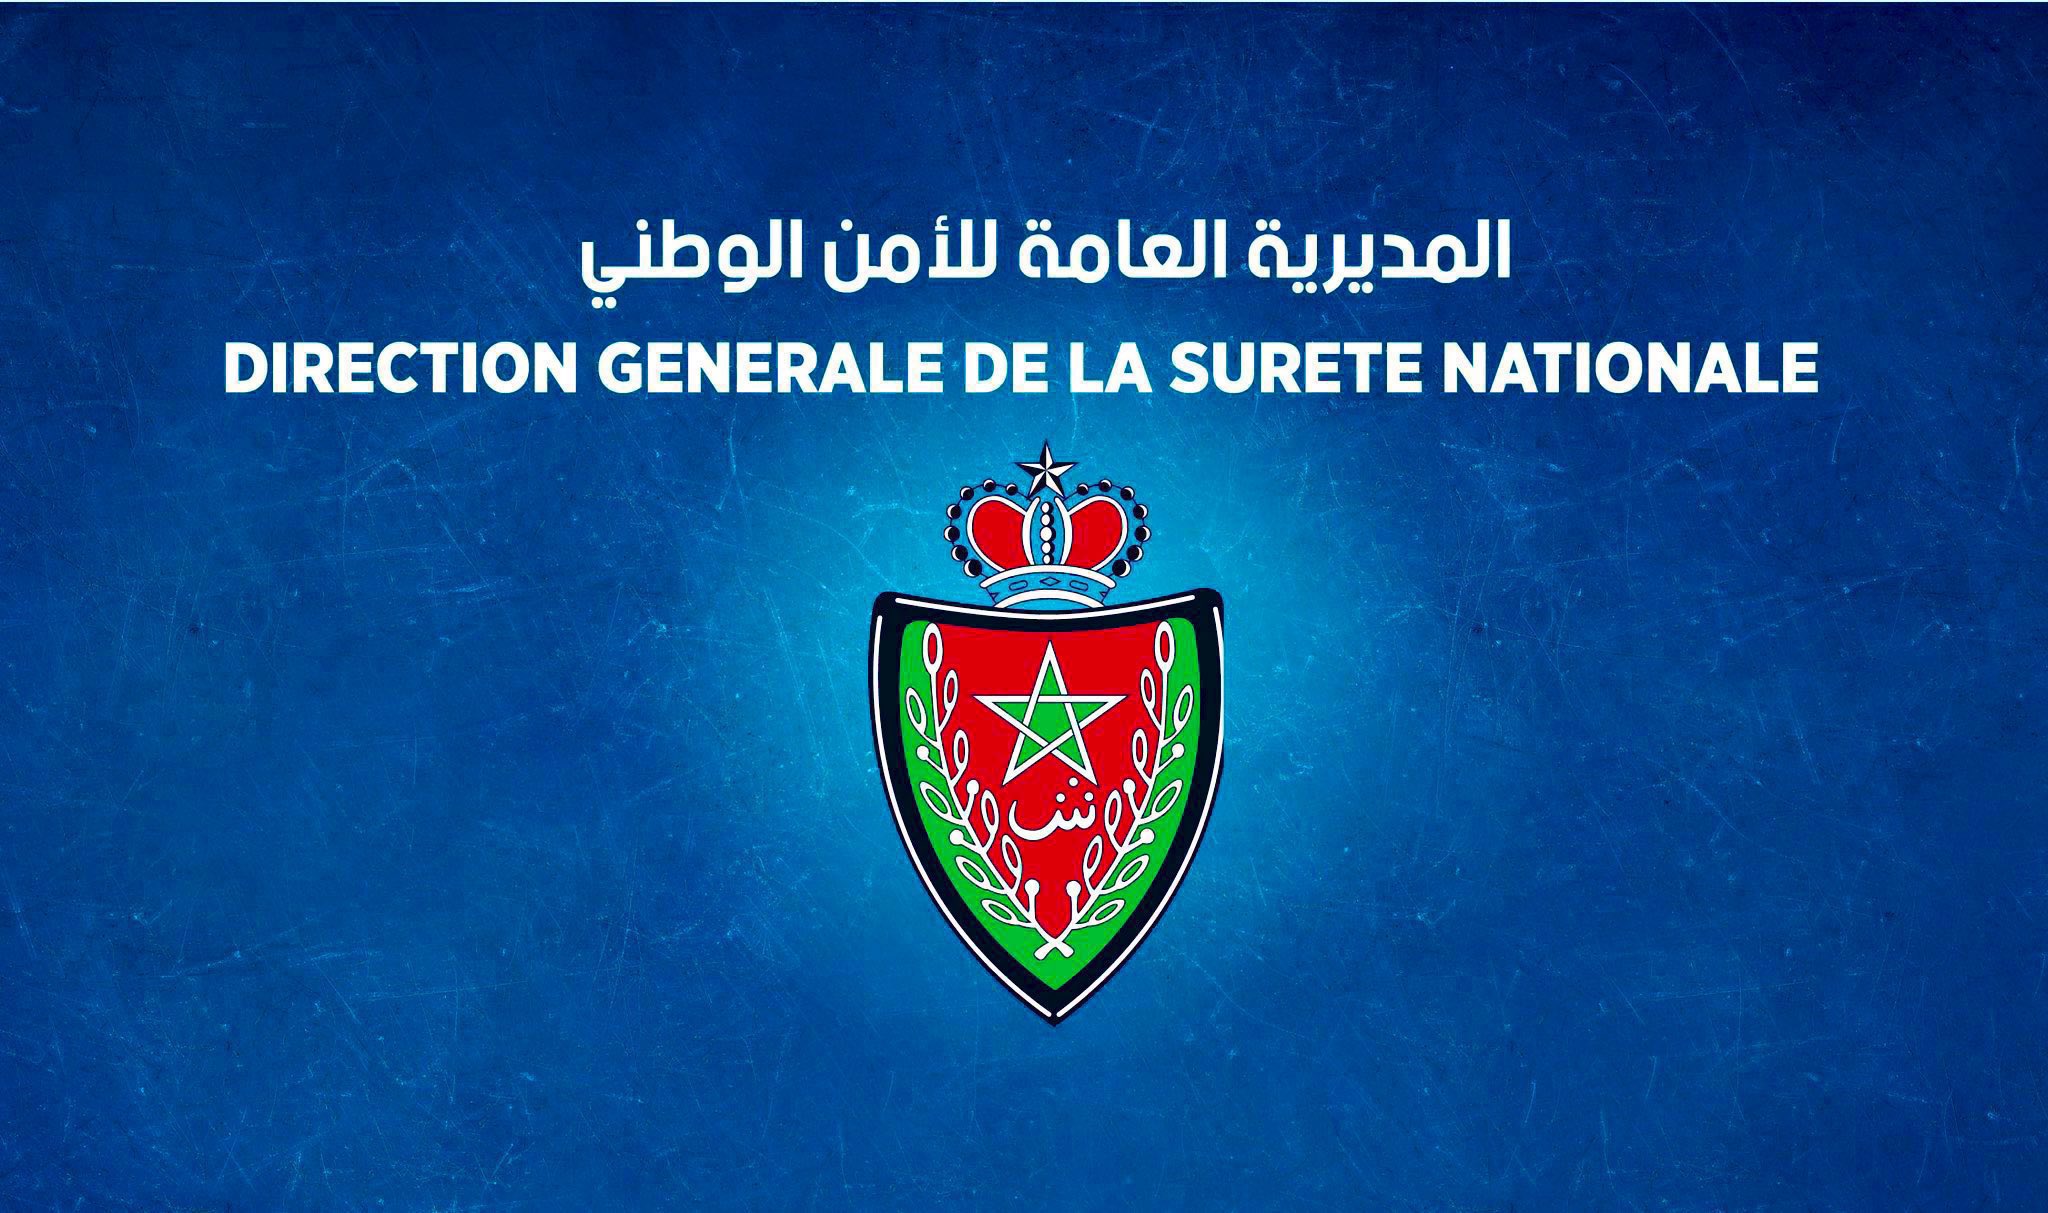 توقيف مواطن جزائري وعشيقته لتورطهما في ارتكاب سرقات متعددة من داخل السيارات